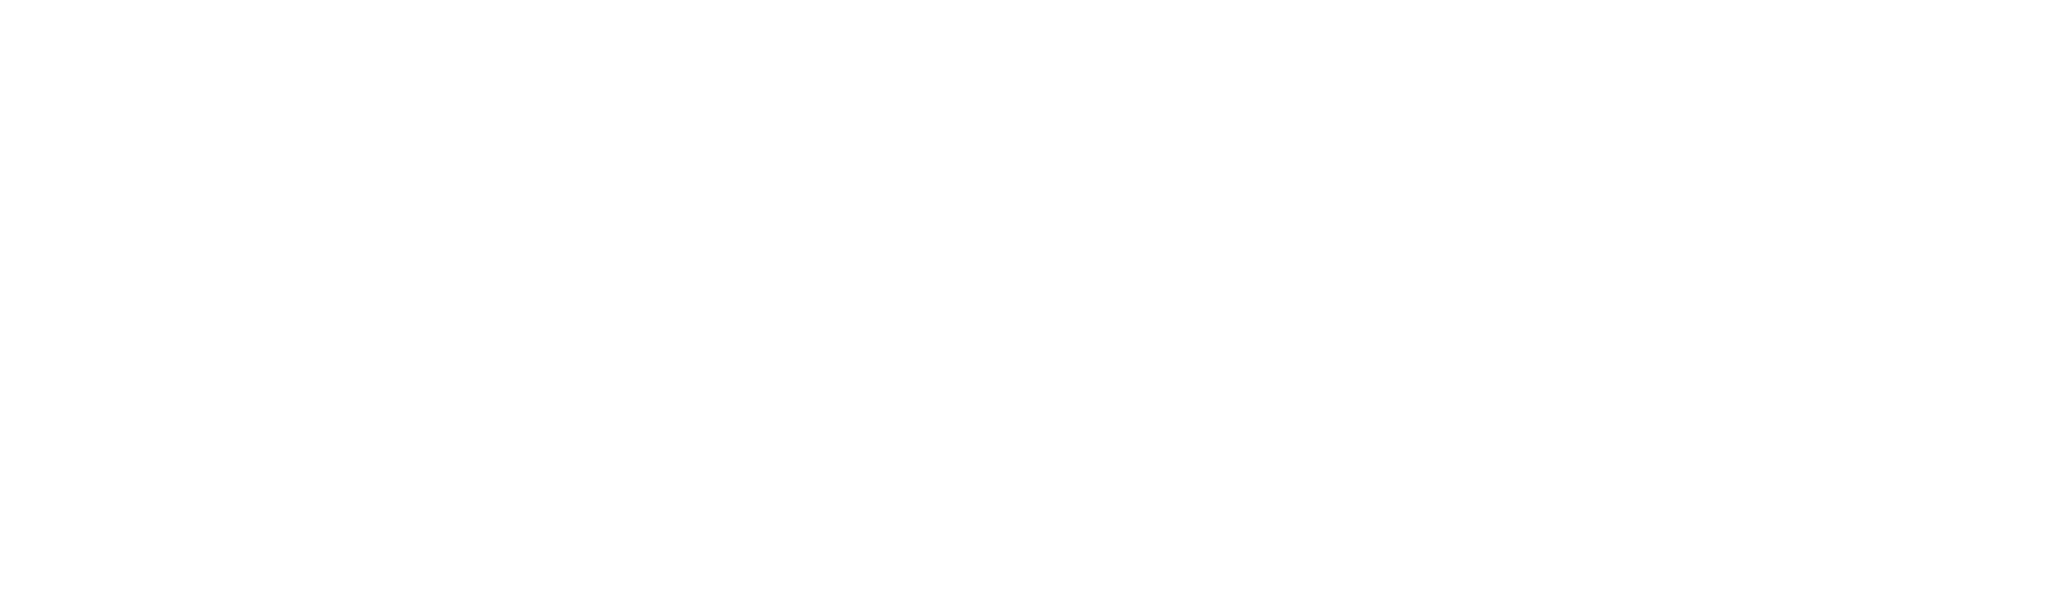 Technology Service Corporation